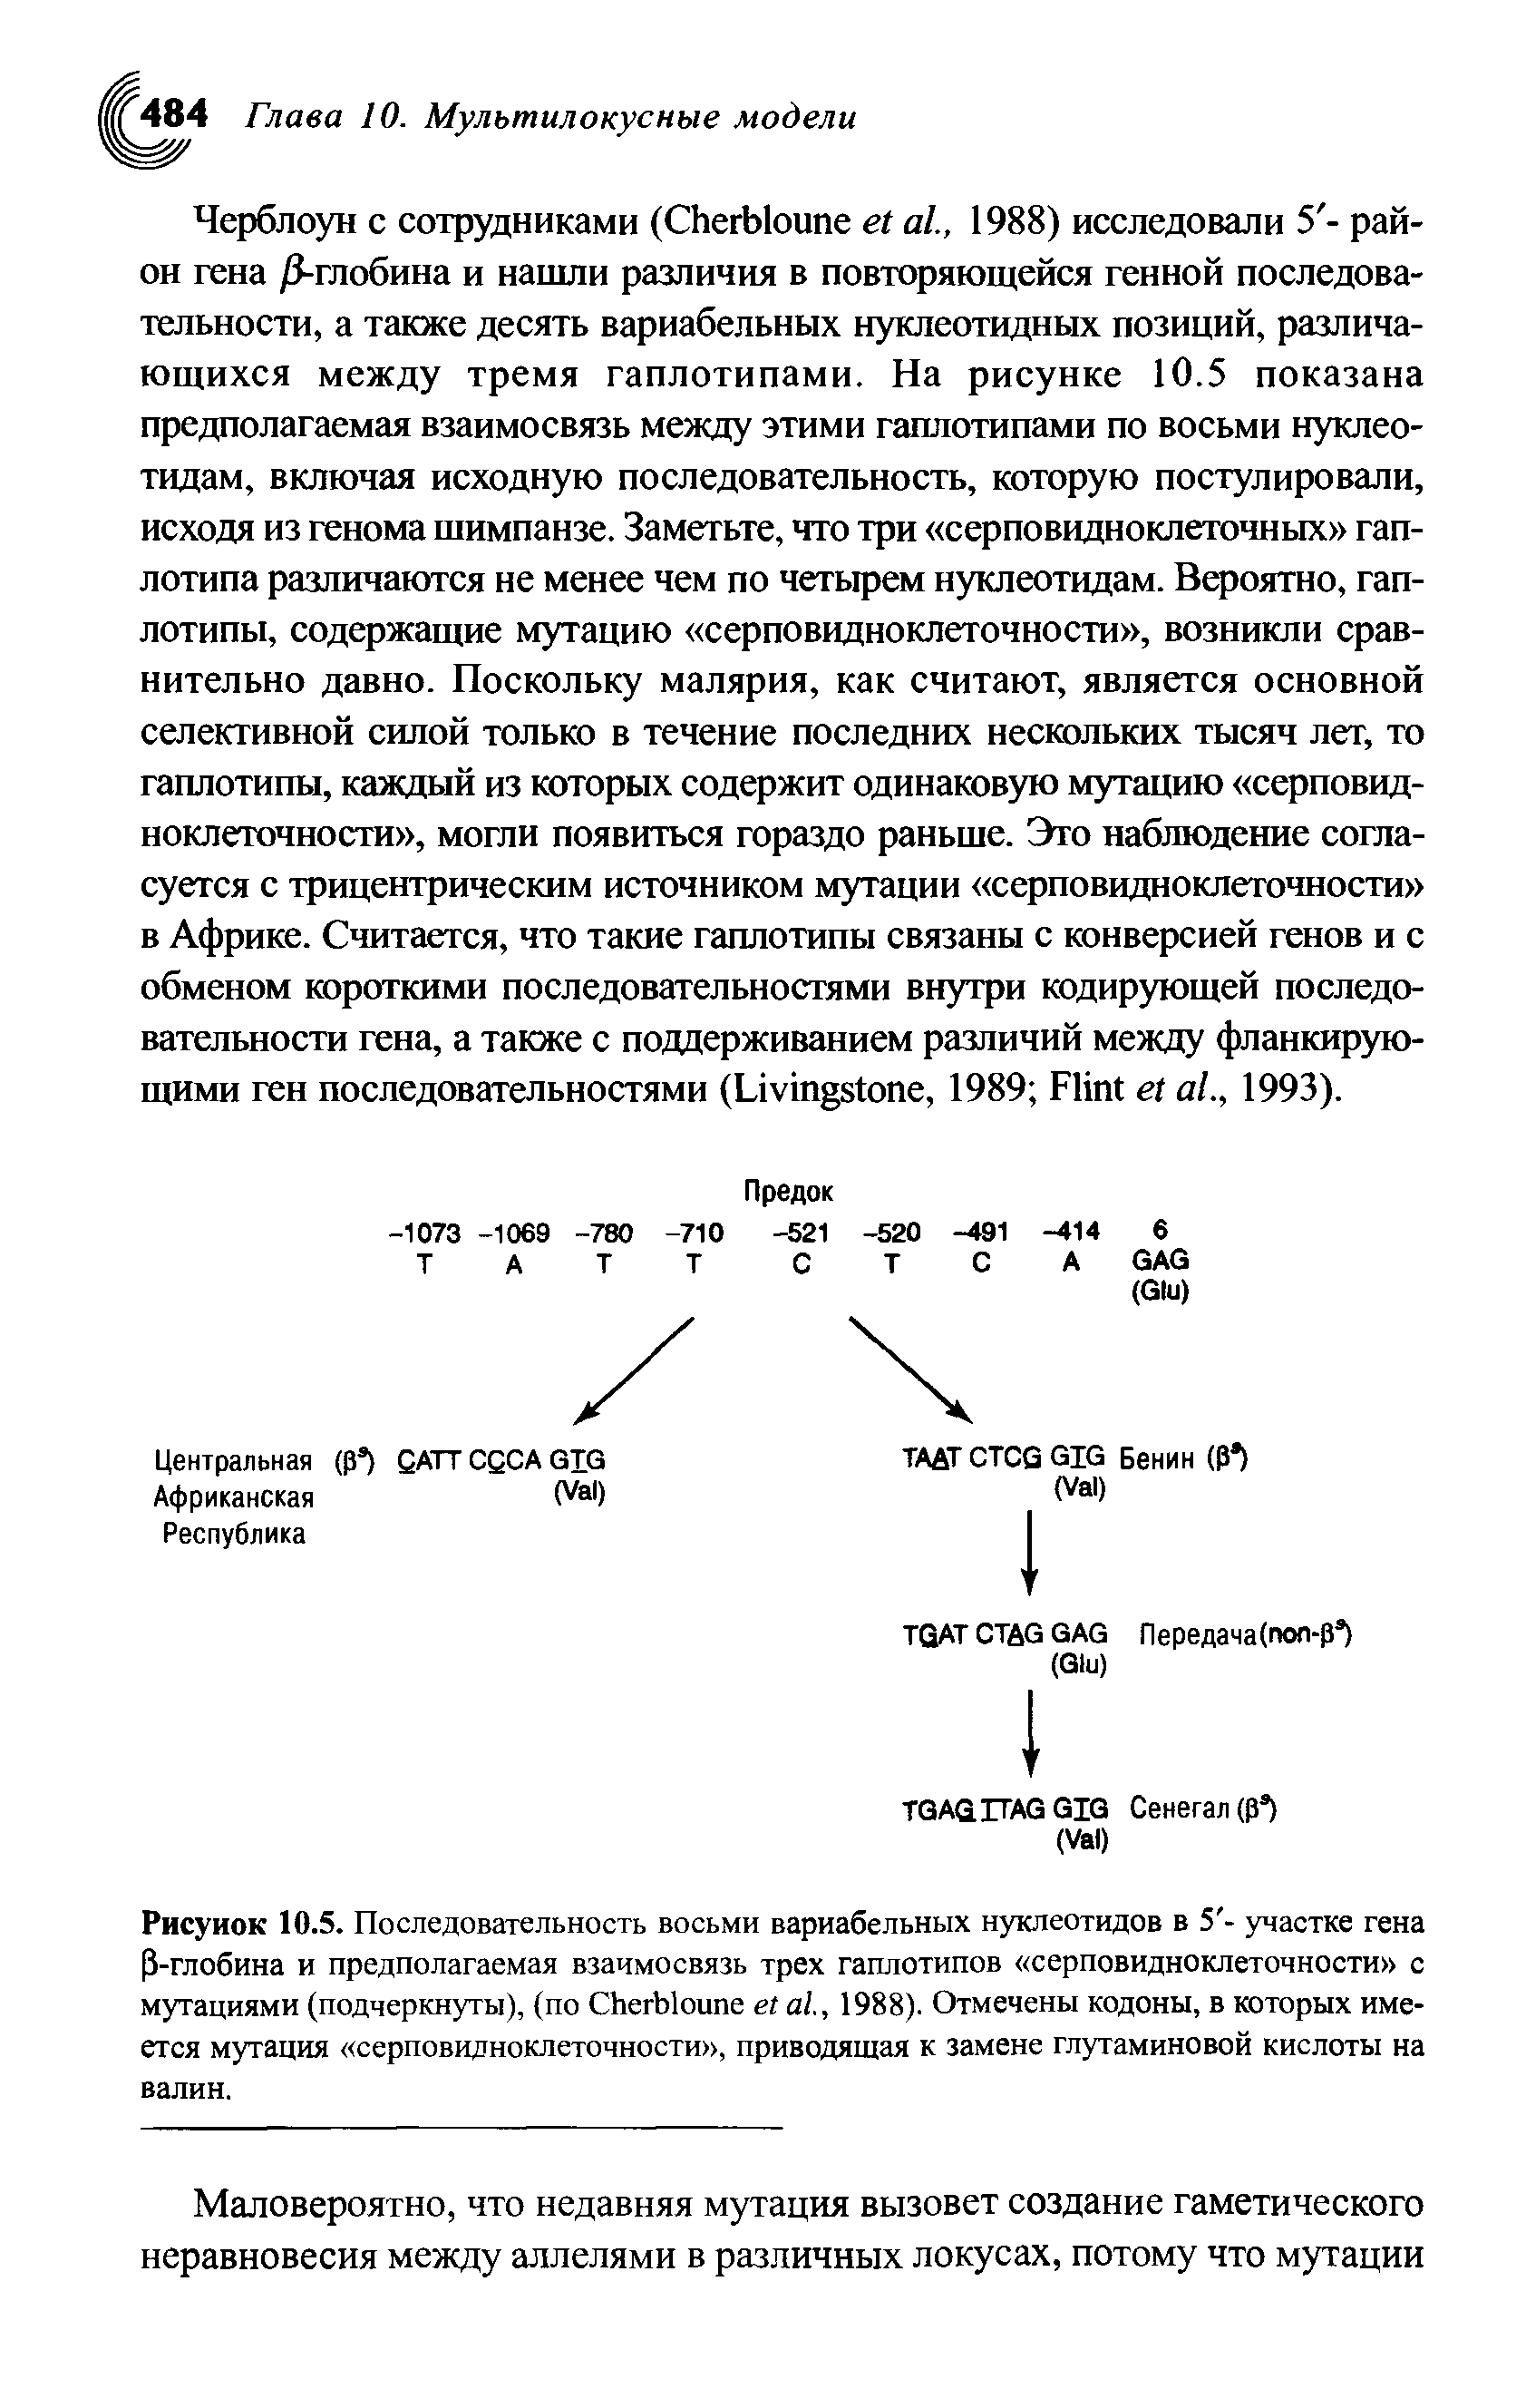 Рисунок 10.5. Последовательность восьми вариабельных нуклеотидов в 5 - участке гена Р-глобина и предполагаемая взаимосвязь трех гаплотипов серповидноклеточности с мутациями (подчеркнуты), (по СЬегЫоипе ег а/., 1988). Отмечены кодоны, в которых имеется мутация серповидноклеточности , приводящая к замене глутаминовой кислоты на валин.